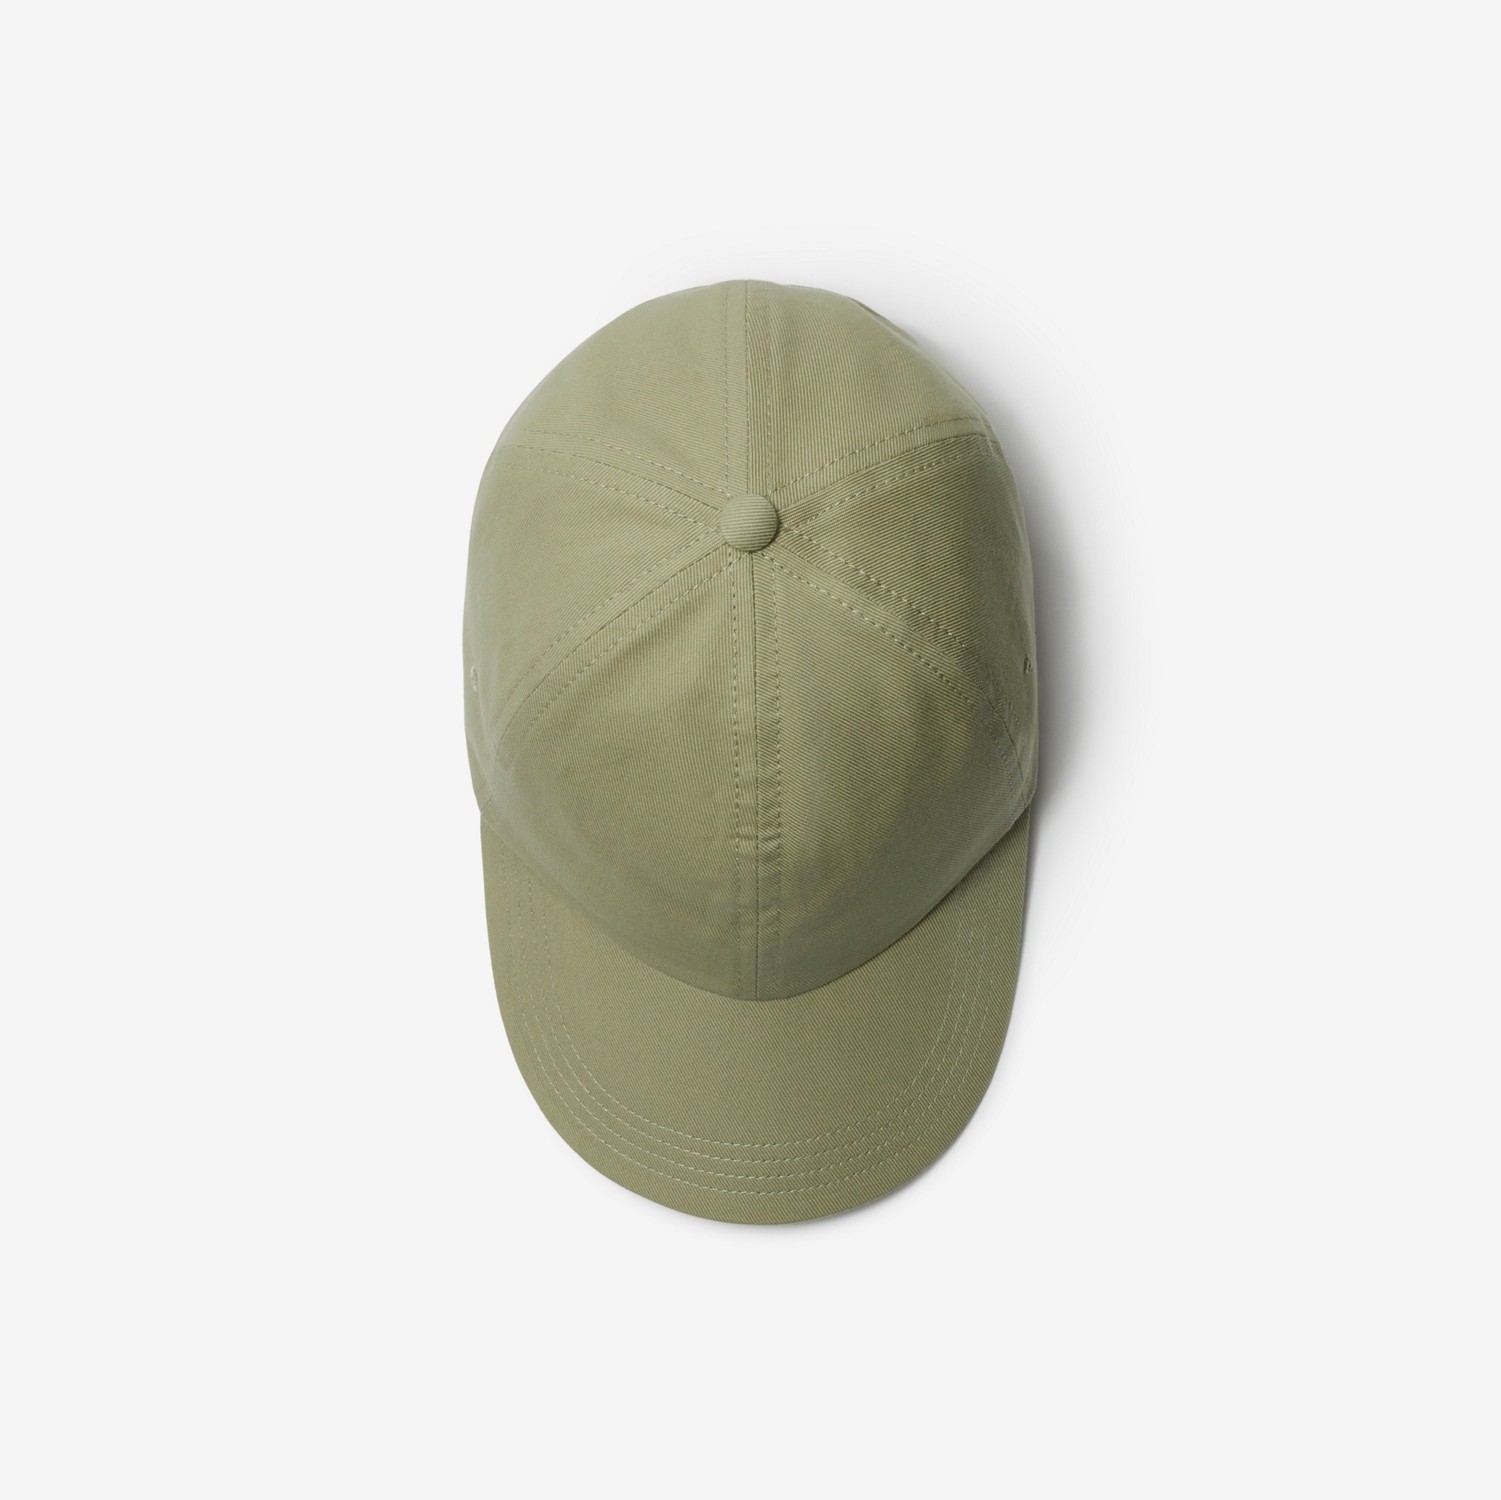 马术骑士徽标棉质棒球帽 (猎户米) | Burberry® 博柏利官网